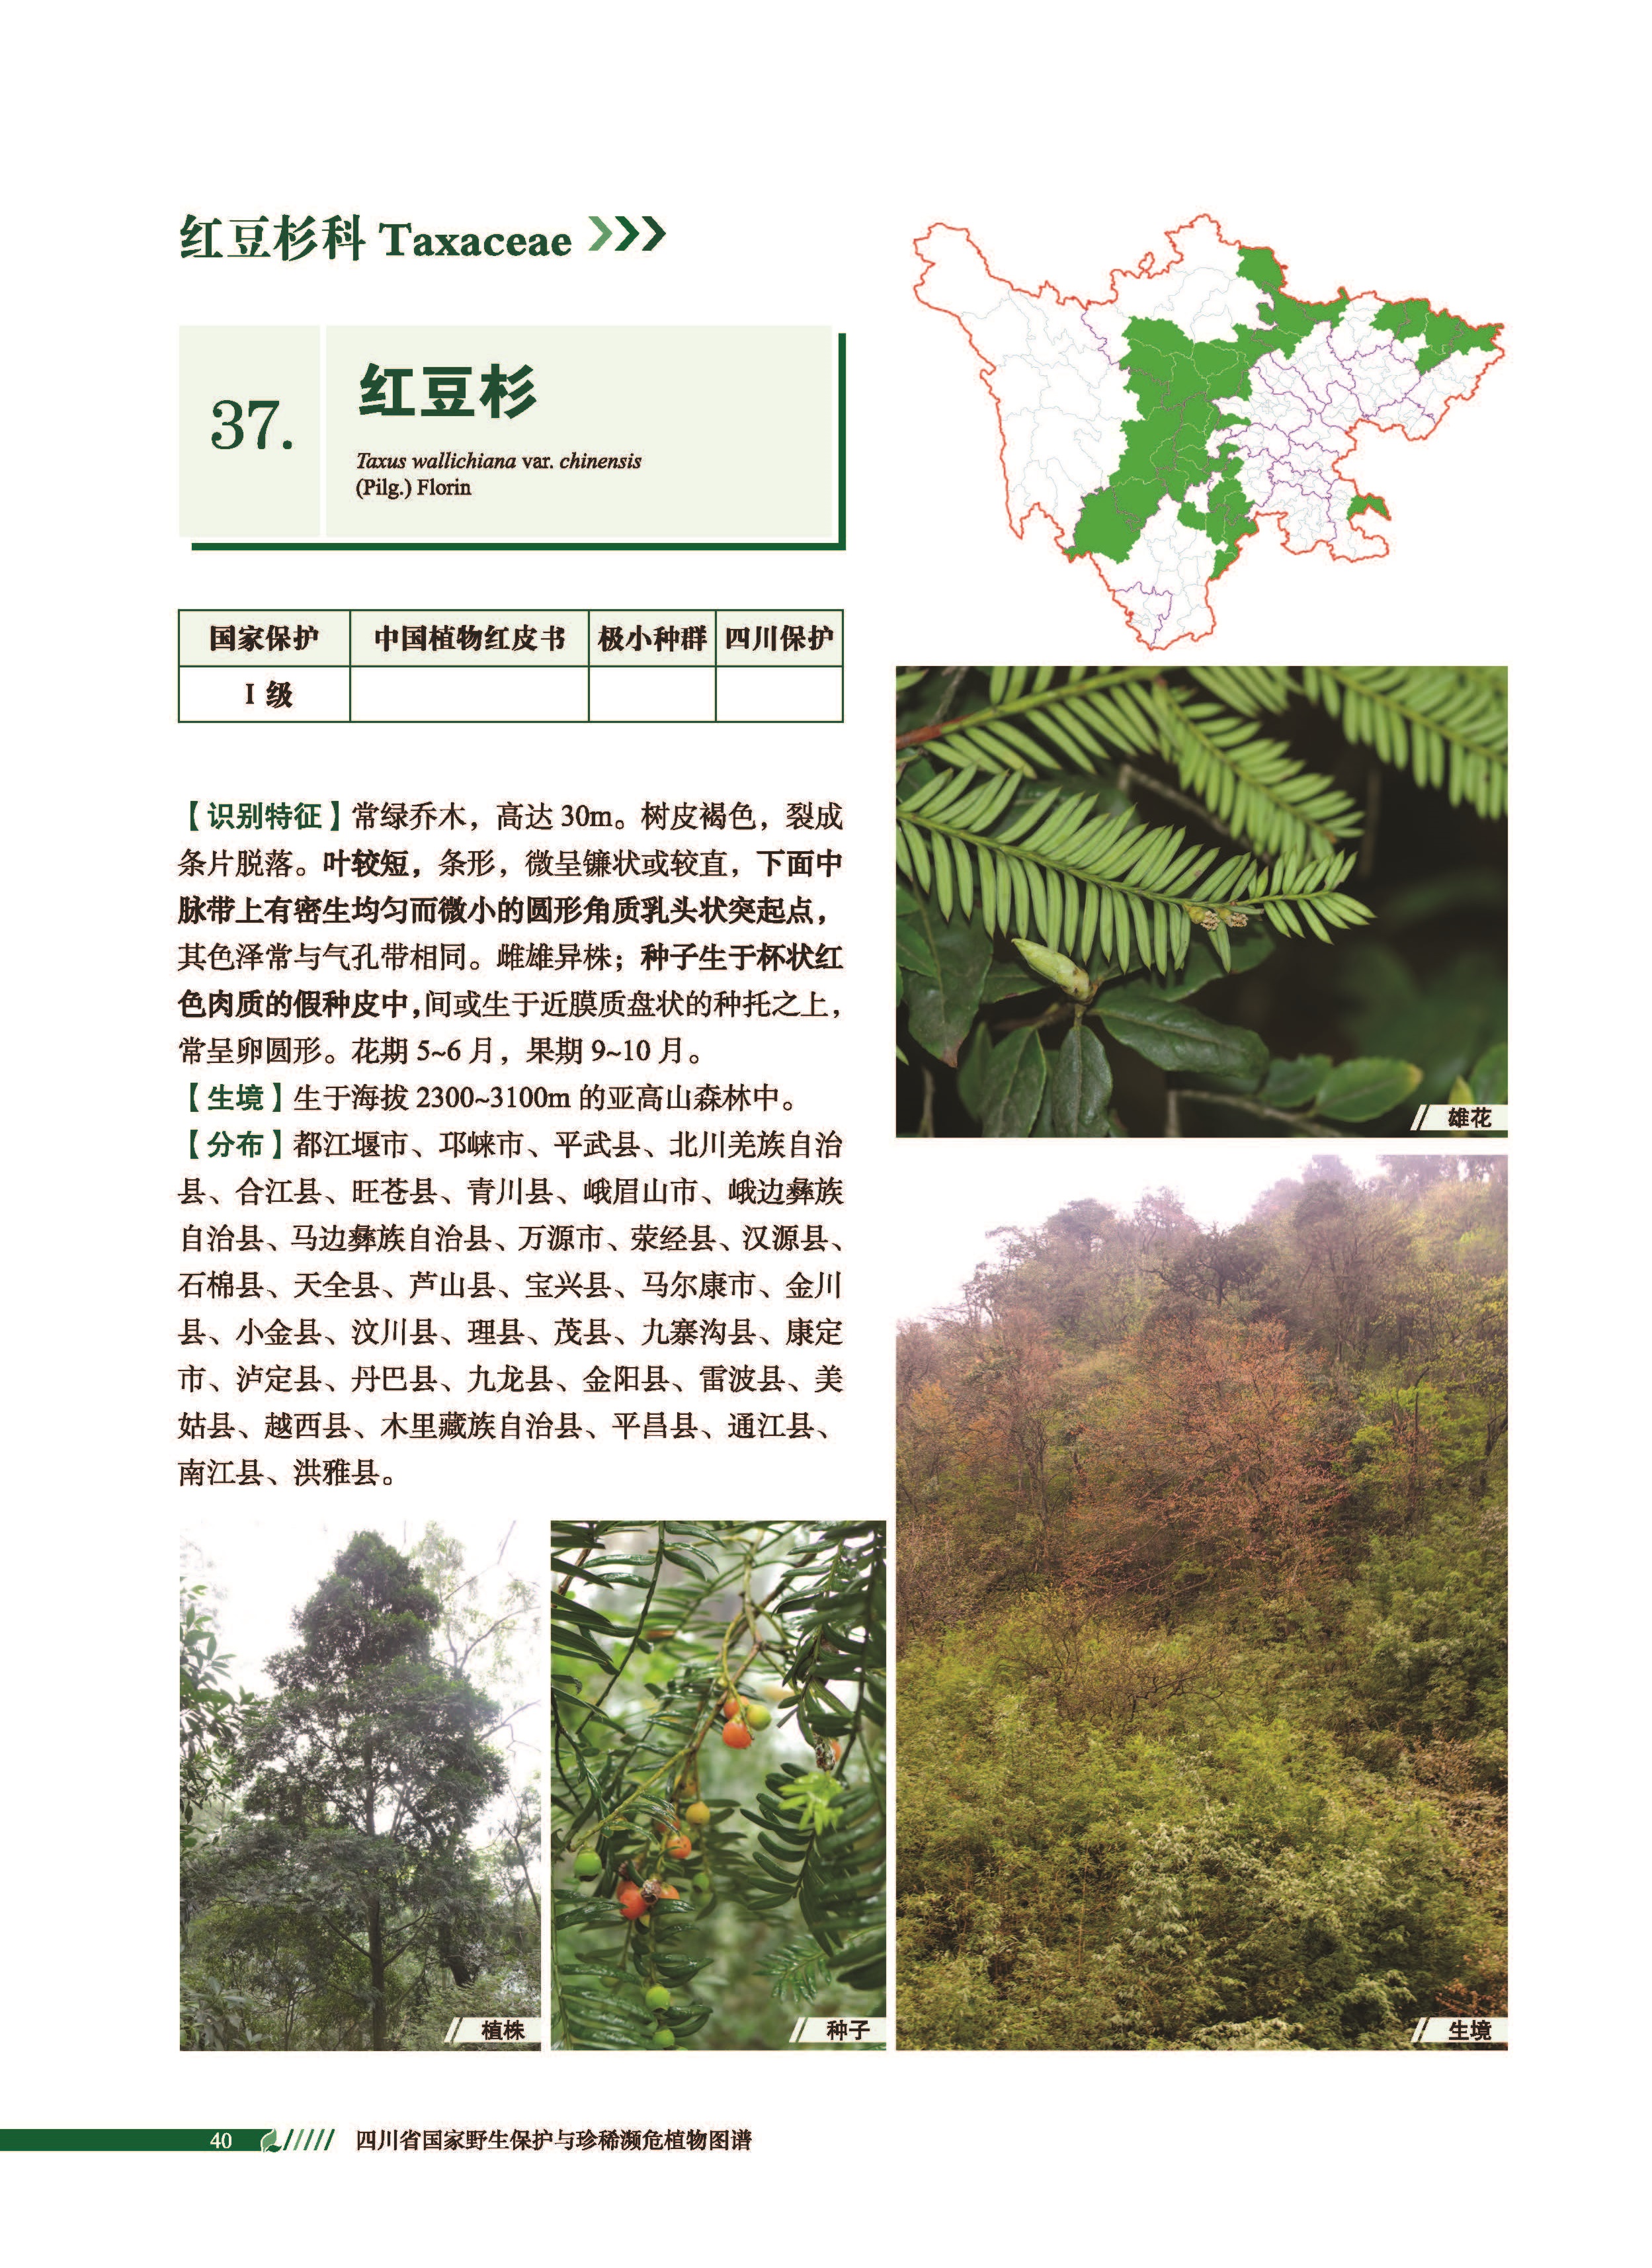 中国野生植物保护 - 中国履行《全球植物保护战略》进展报告结论和建议-中国野生植物保护协会